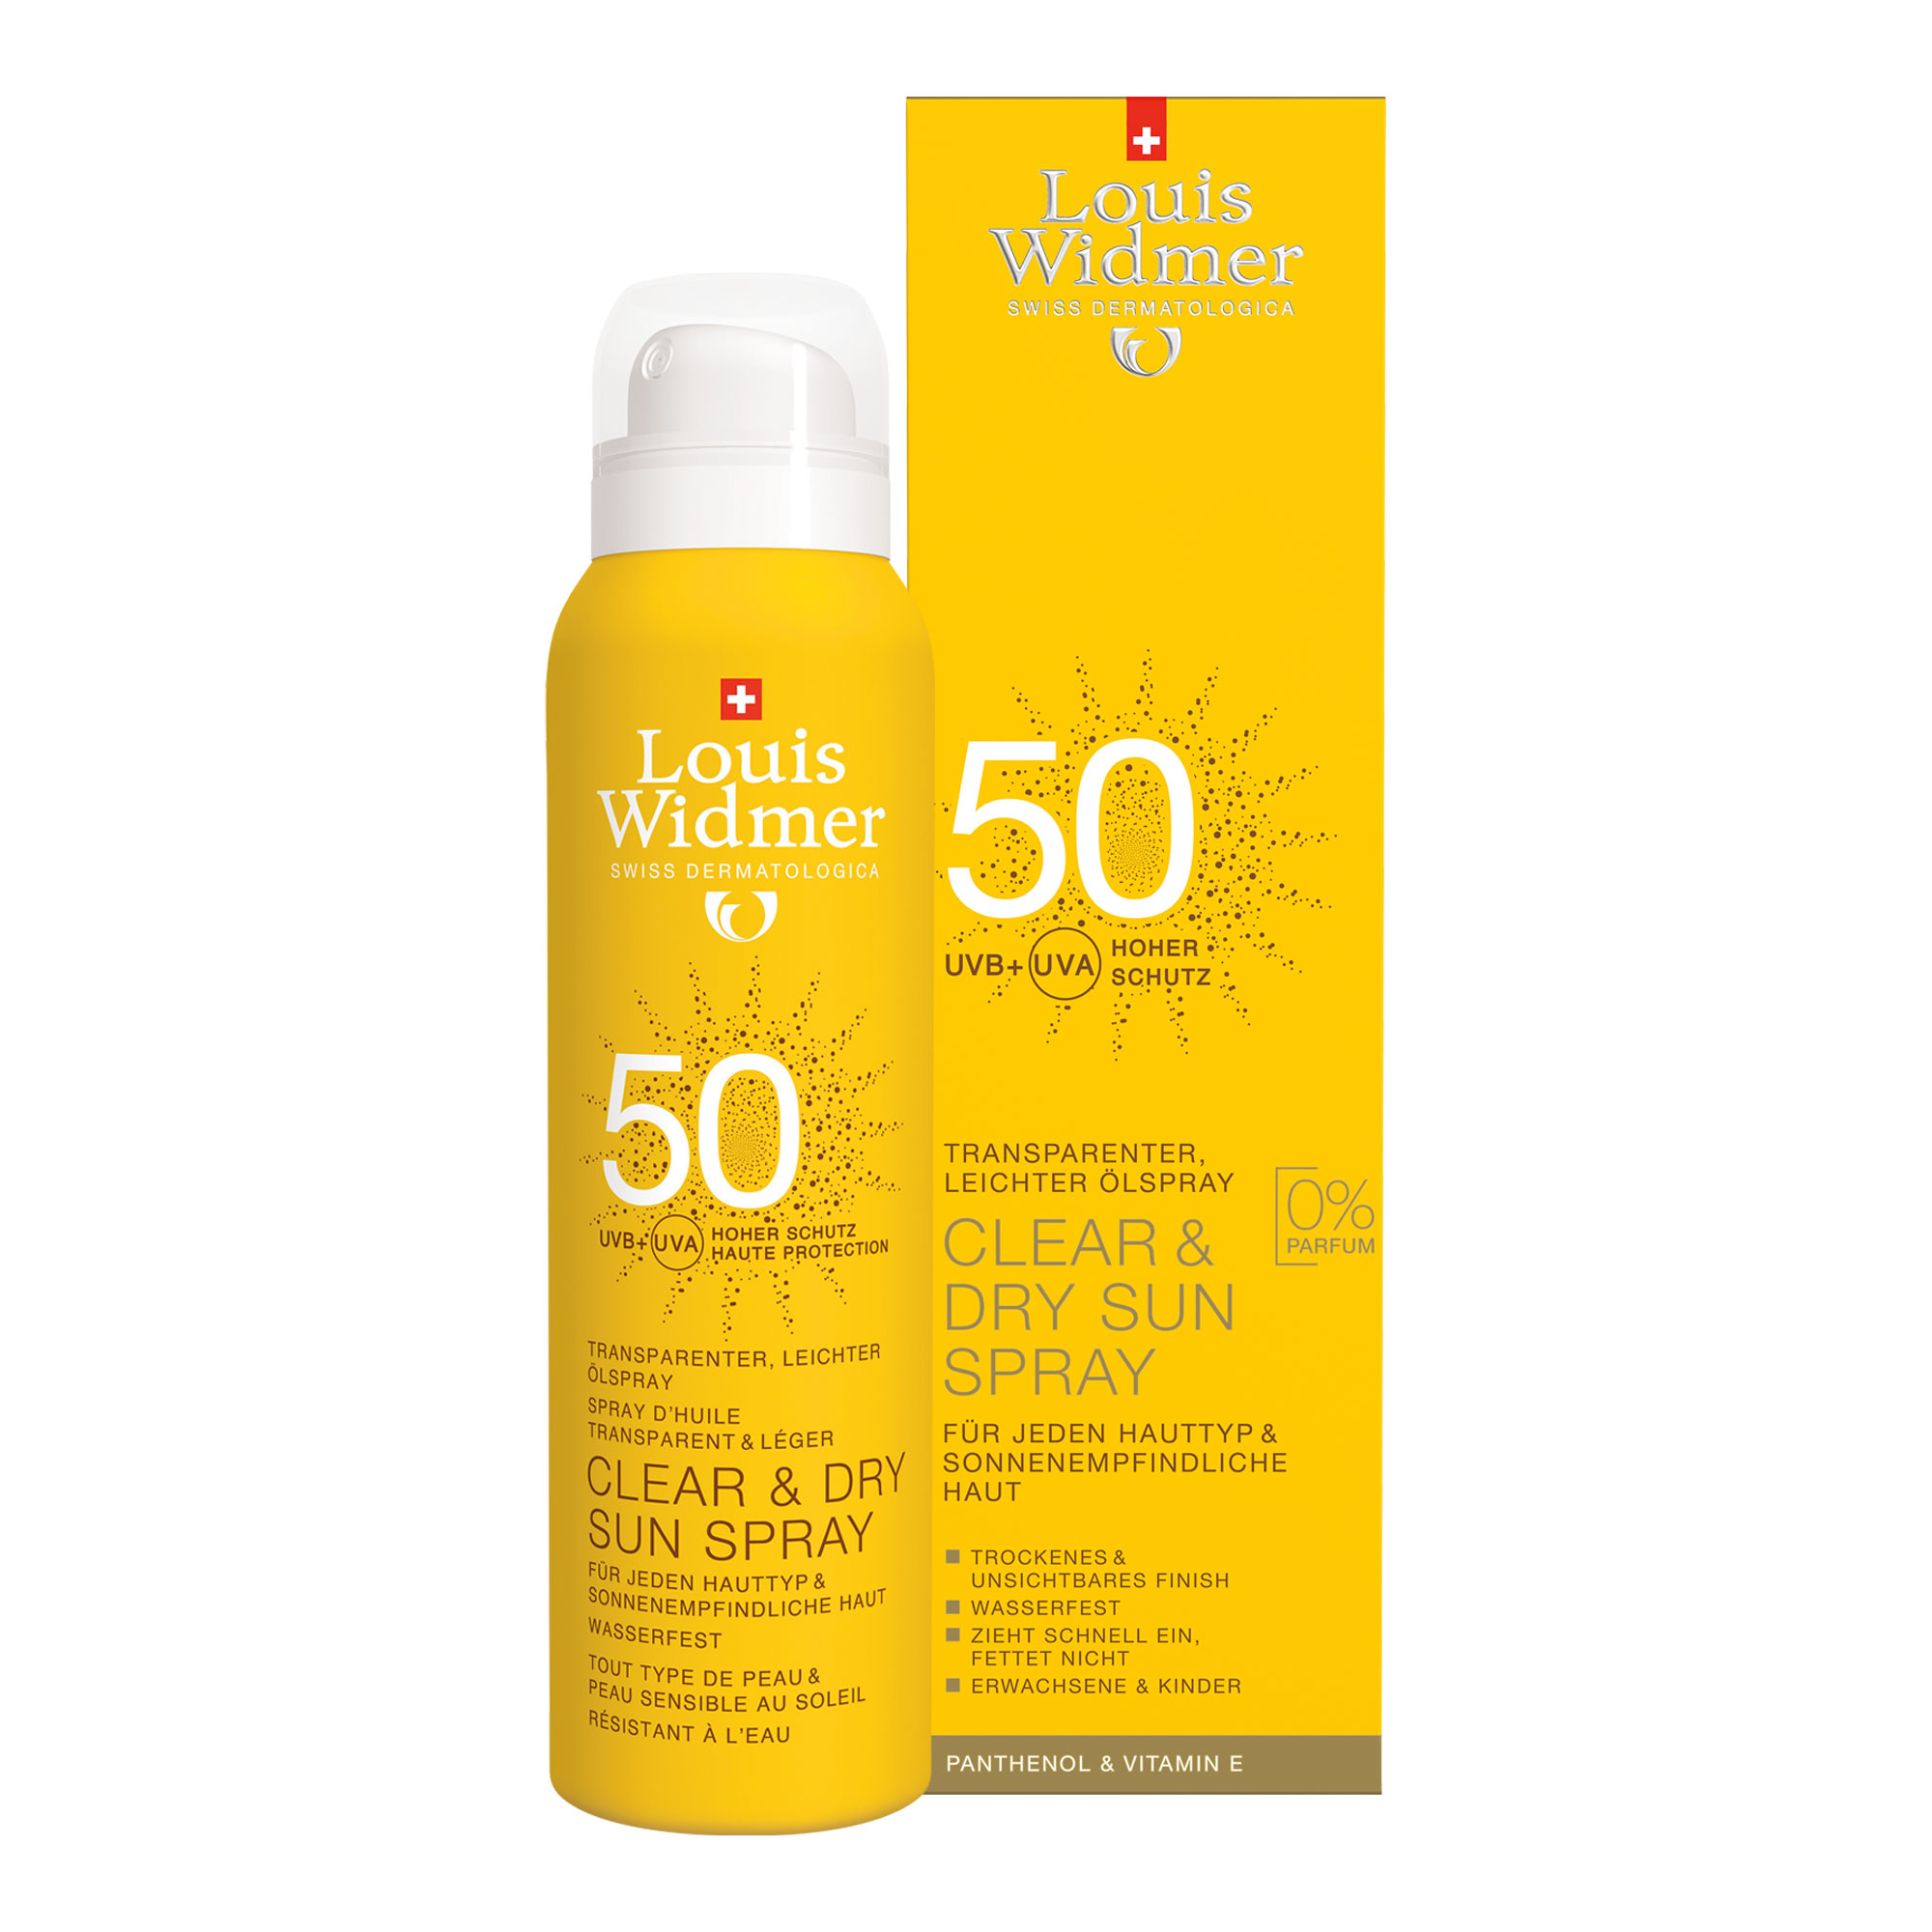 Zuverlässiger, wasserfester Sonnenschutz mit hochwirksamen UVA-/UVB-Filtern. Ideal für empfindliche Haut, zieht schnell ein, ohne Rückstände oder fettiges Gefühl.